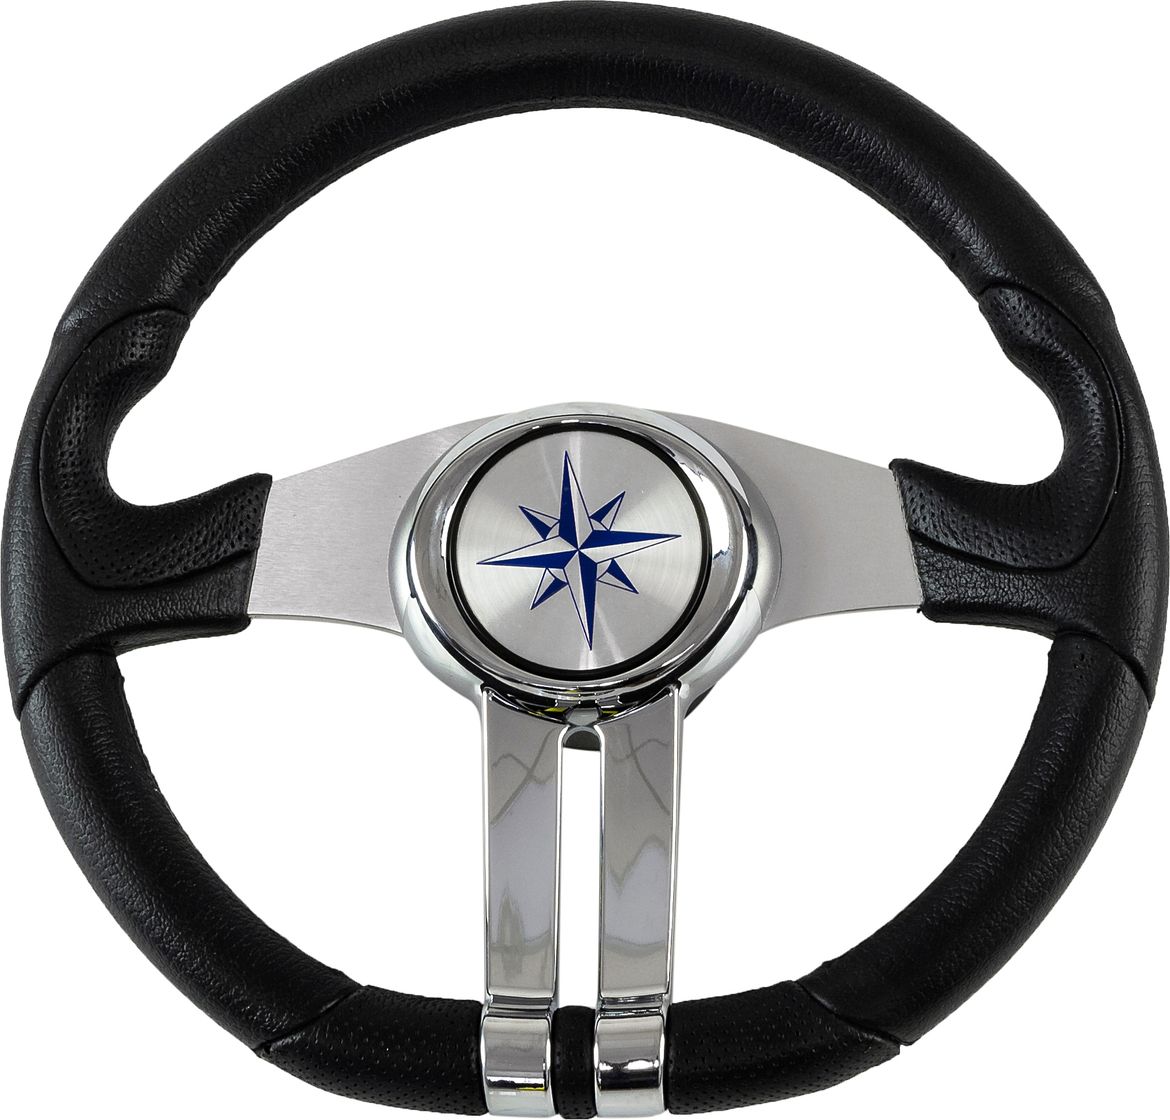 Рулевое колесо BALTIC обод черный, спицы серебряные д. 320 мм VN133203-01 рулевое колесо riviera обод и спицы д 350 мм vn8001 01